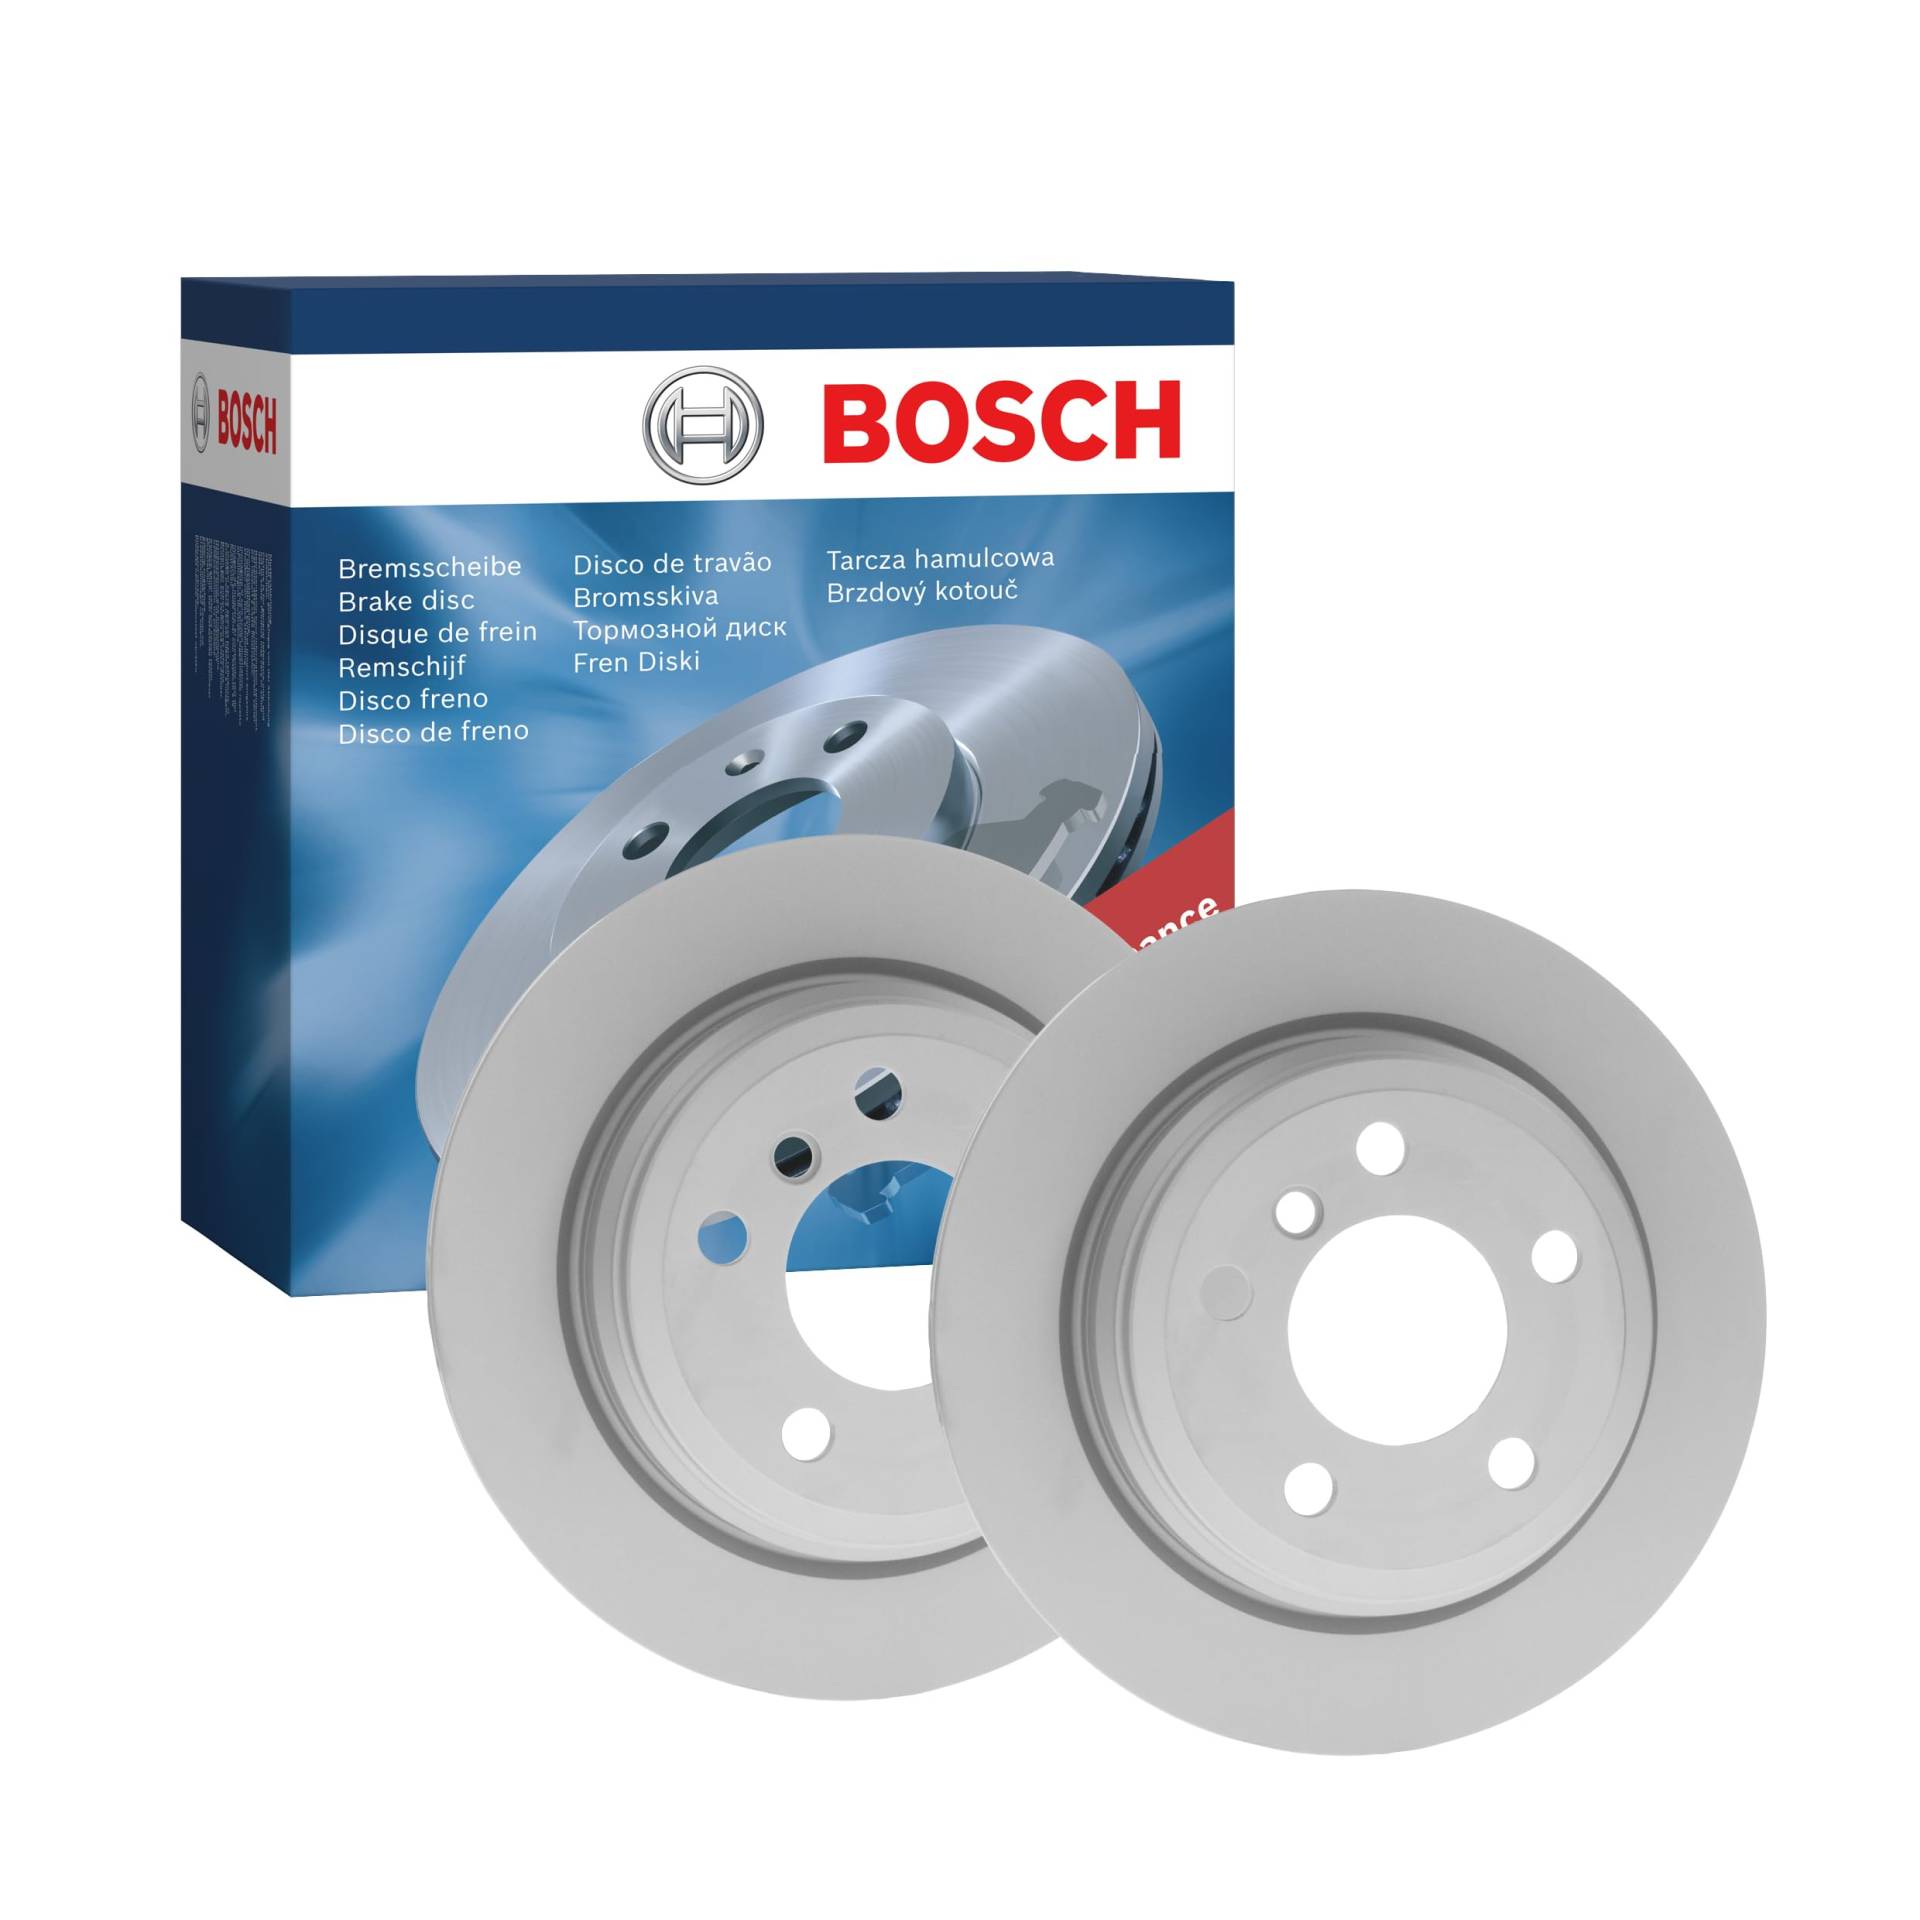 Bosch BD1634 Bremsscheiben - Hinterachse - ECE-R90 Zertifizierung - zwei Bremsscheiben pro Set von Bosch Automotive